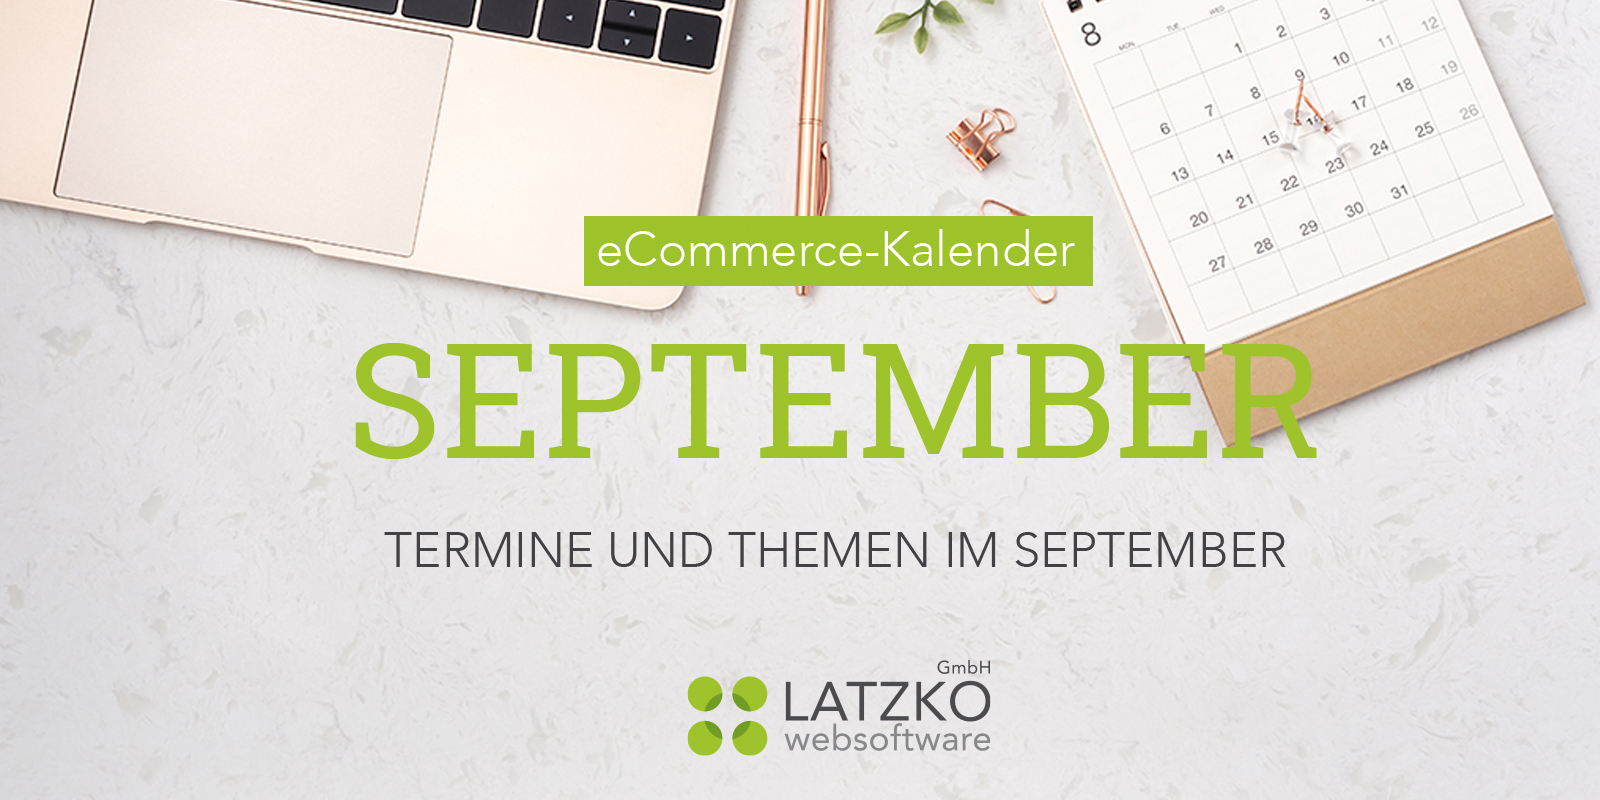 eCommerce-Kalender / September 2021